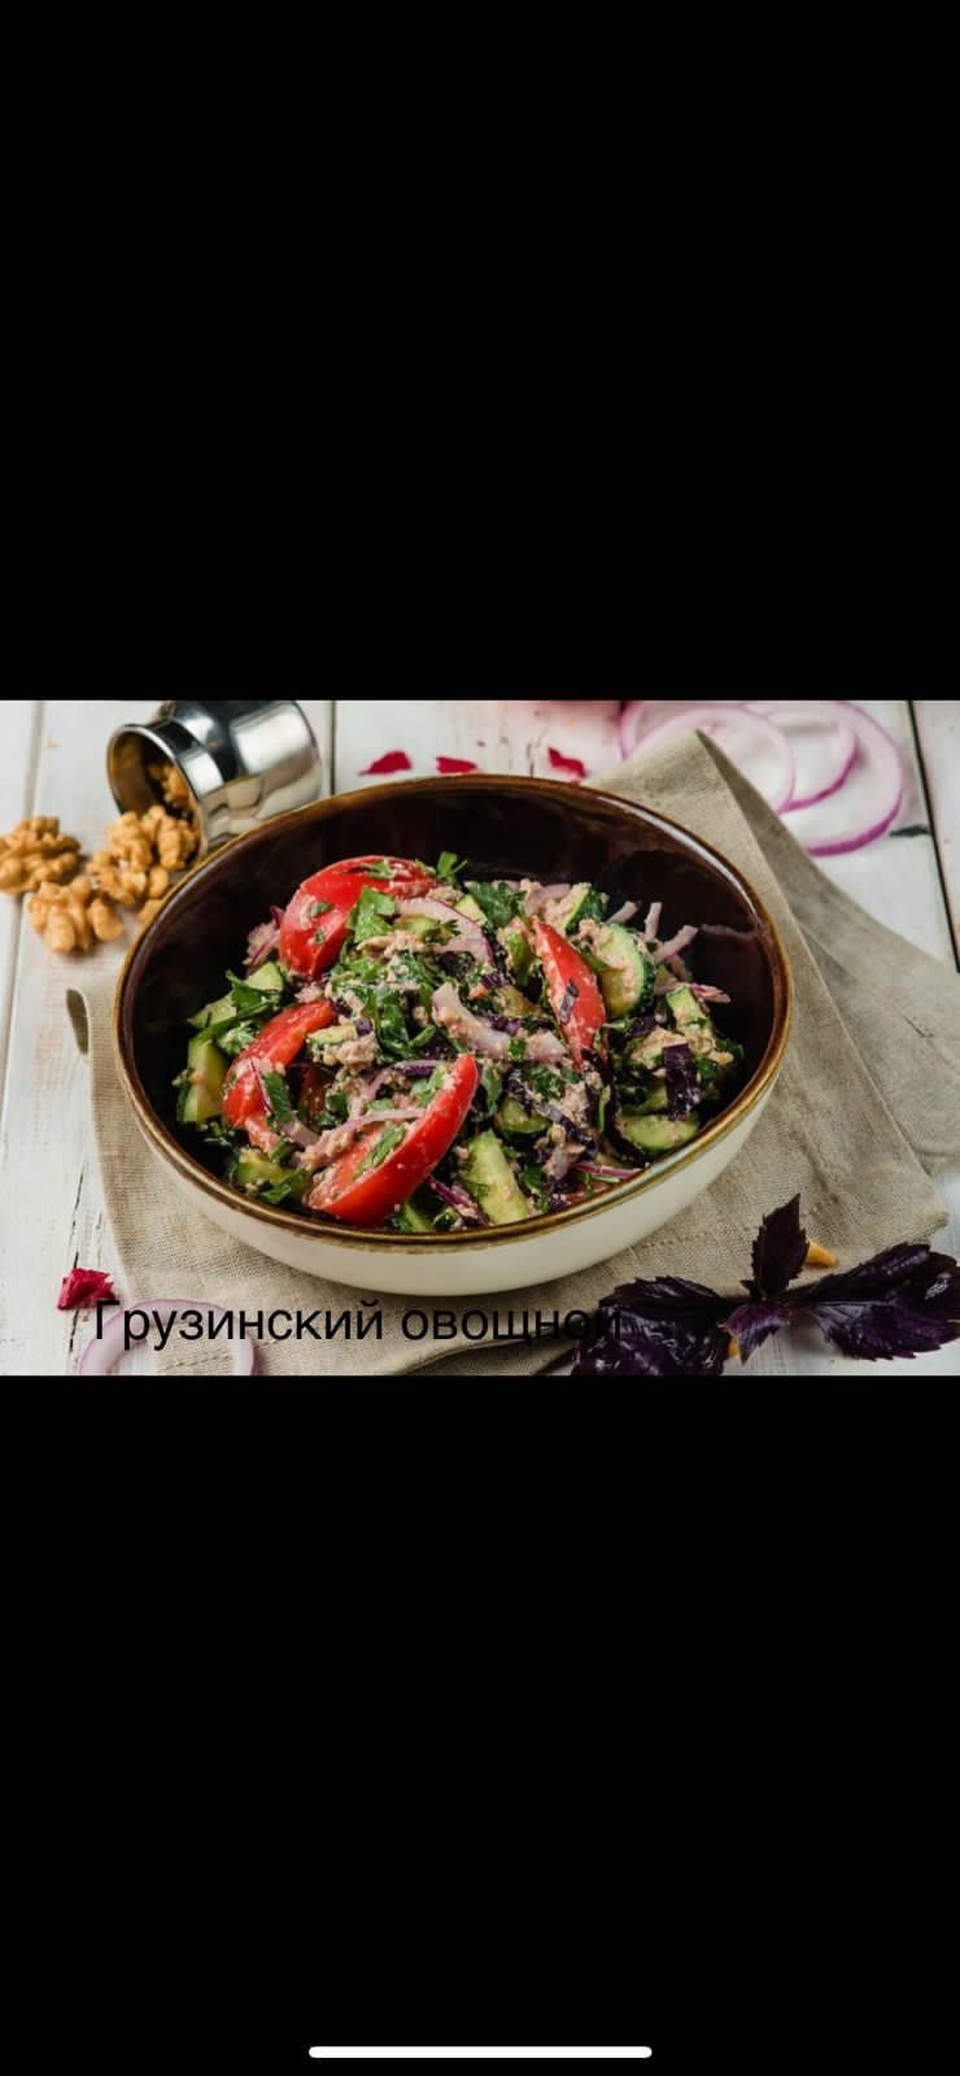 Овощной грузинский салат - 360 ₽, заказать онлайн.